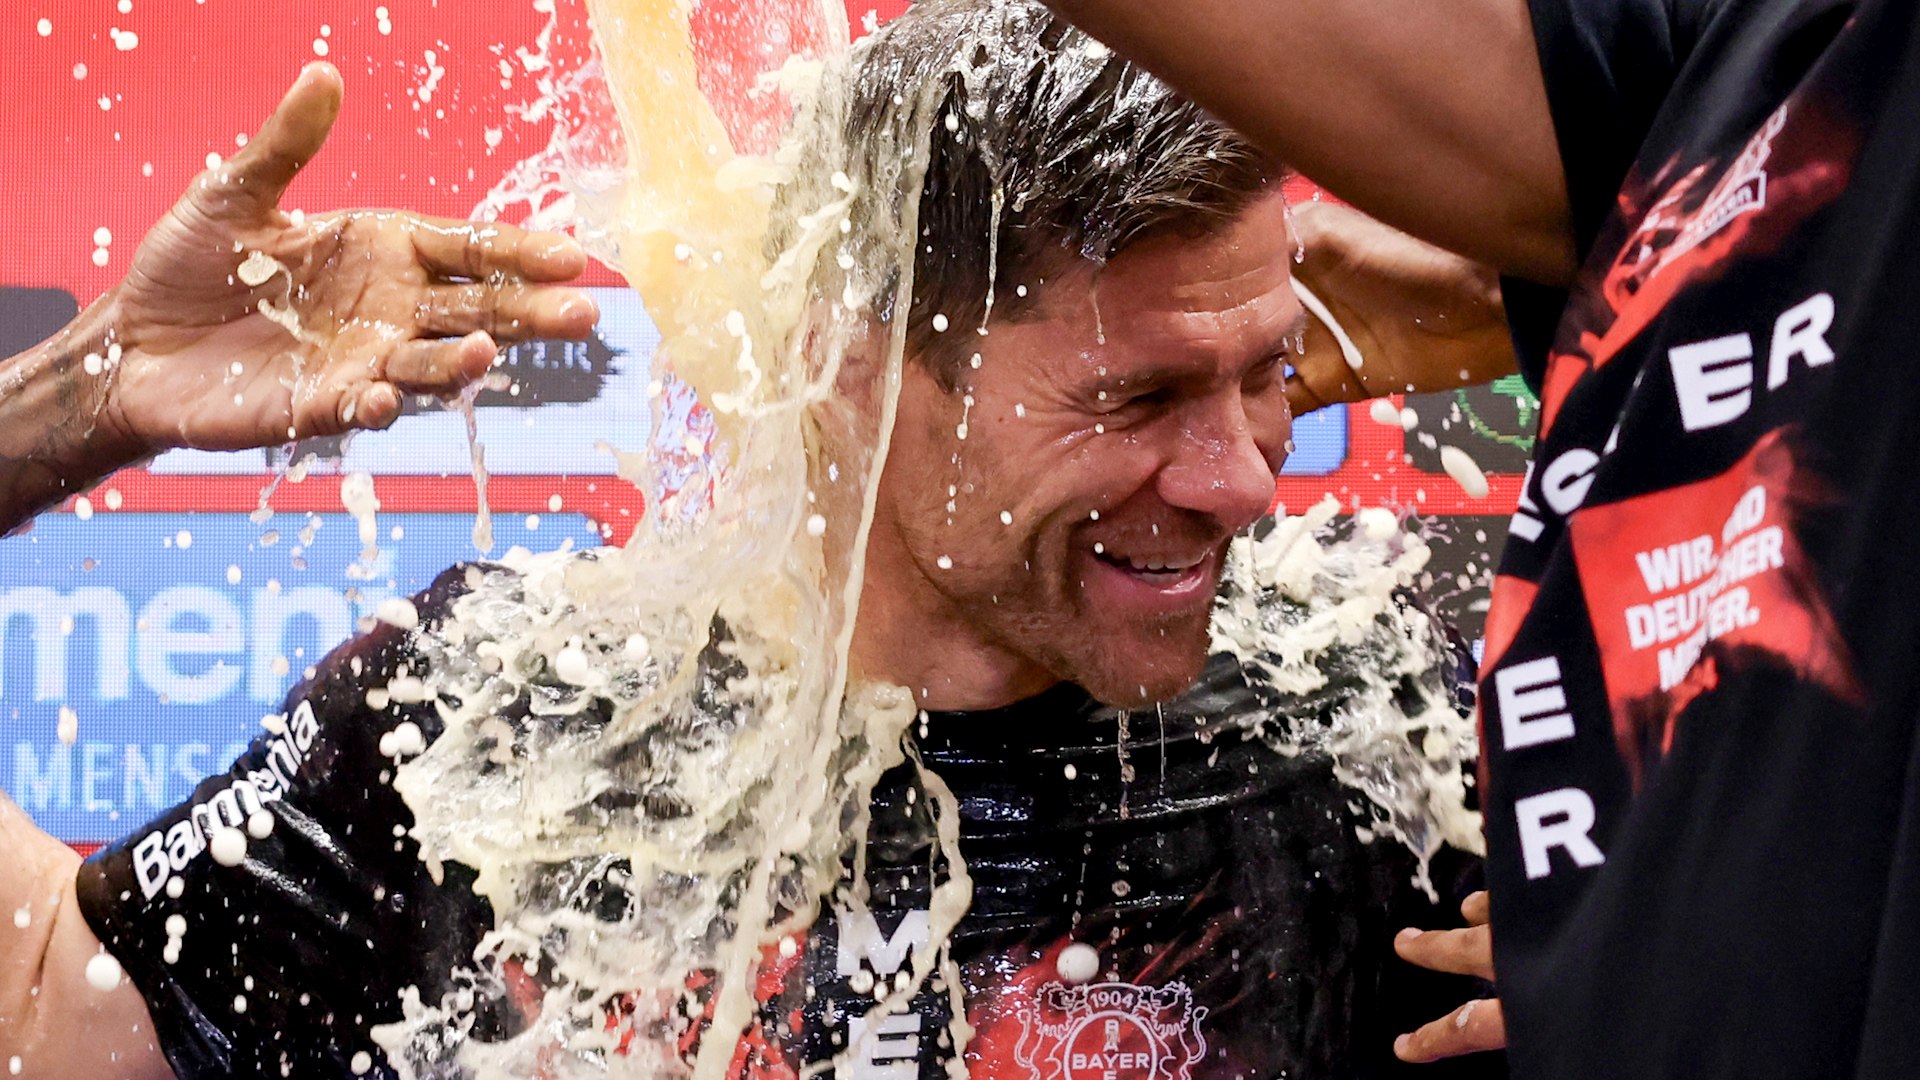 Xabi Alonso duchado en cerveza por los jugadores del Leverkusen tras ganar su primera Bundesliga